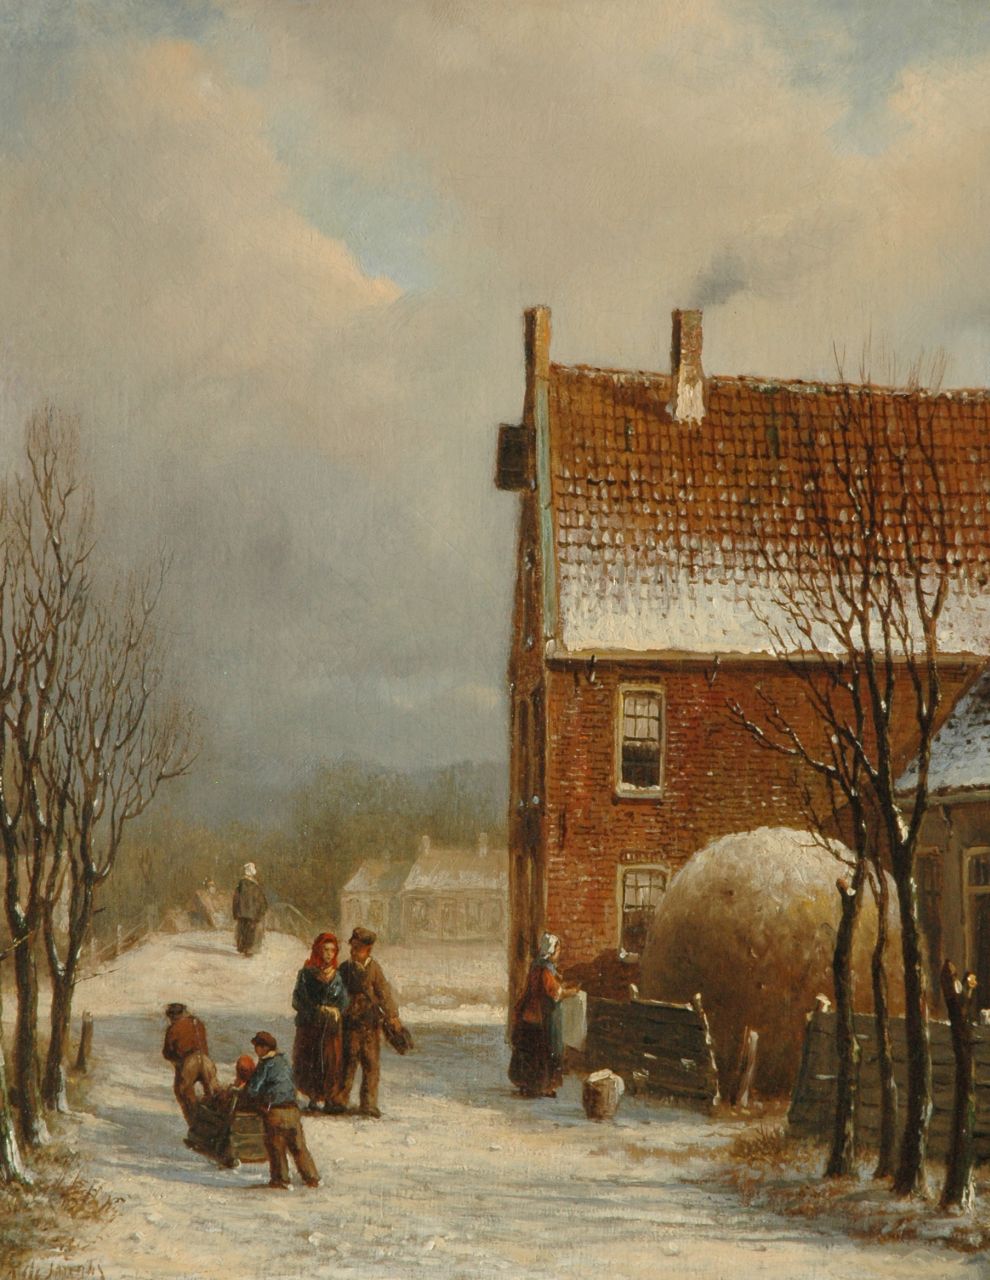 Jongh O.R. de | Oene Romkes de Jongh, A street scene in winter, Öl auf Leinwand 36,5 x 29,2 cm, signed l.l.